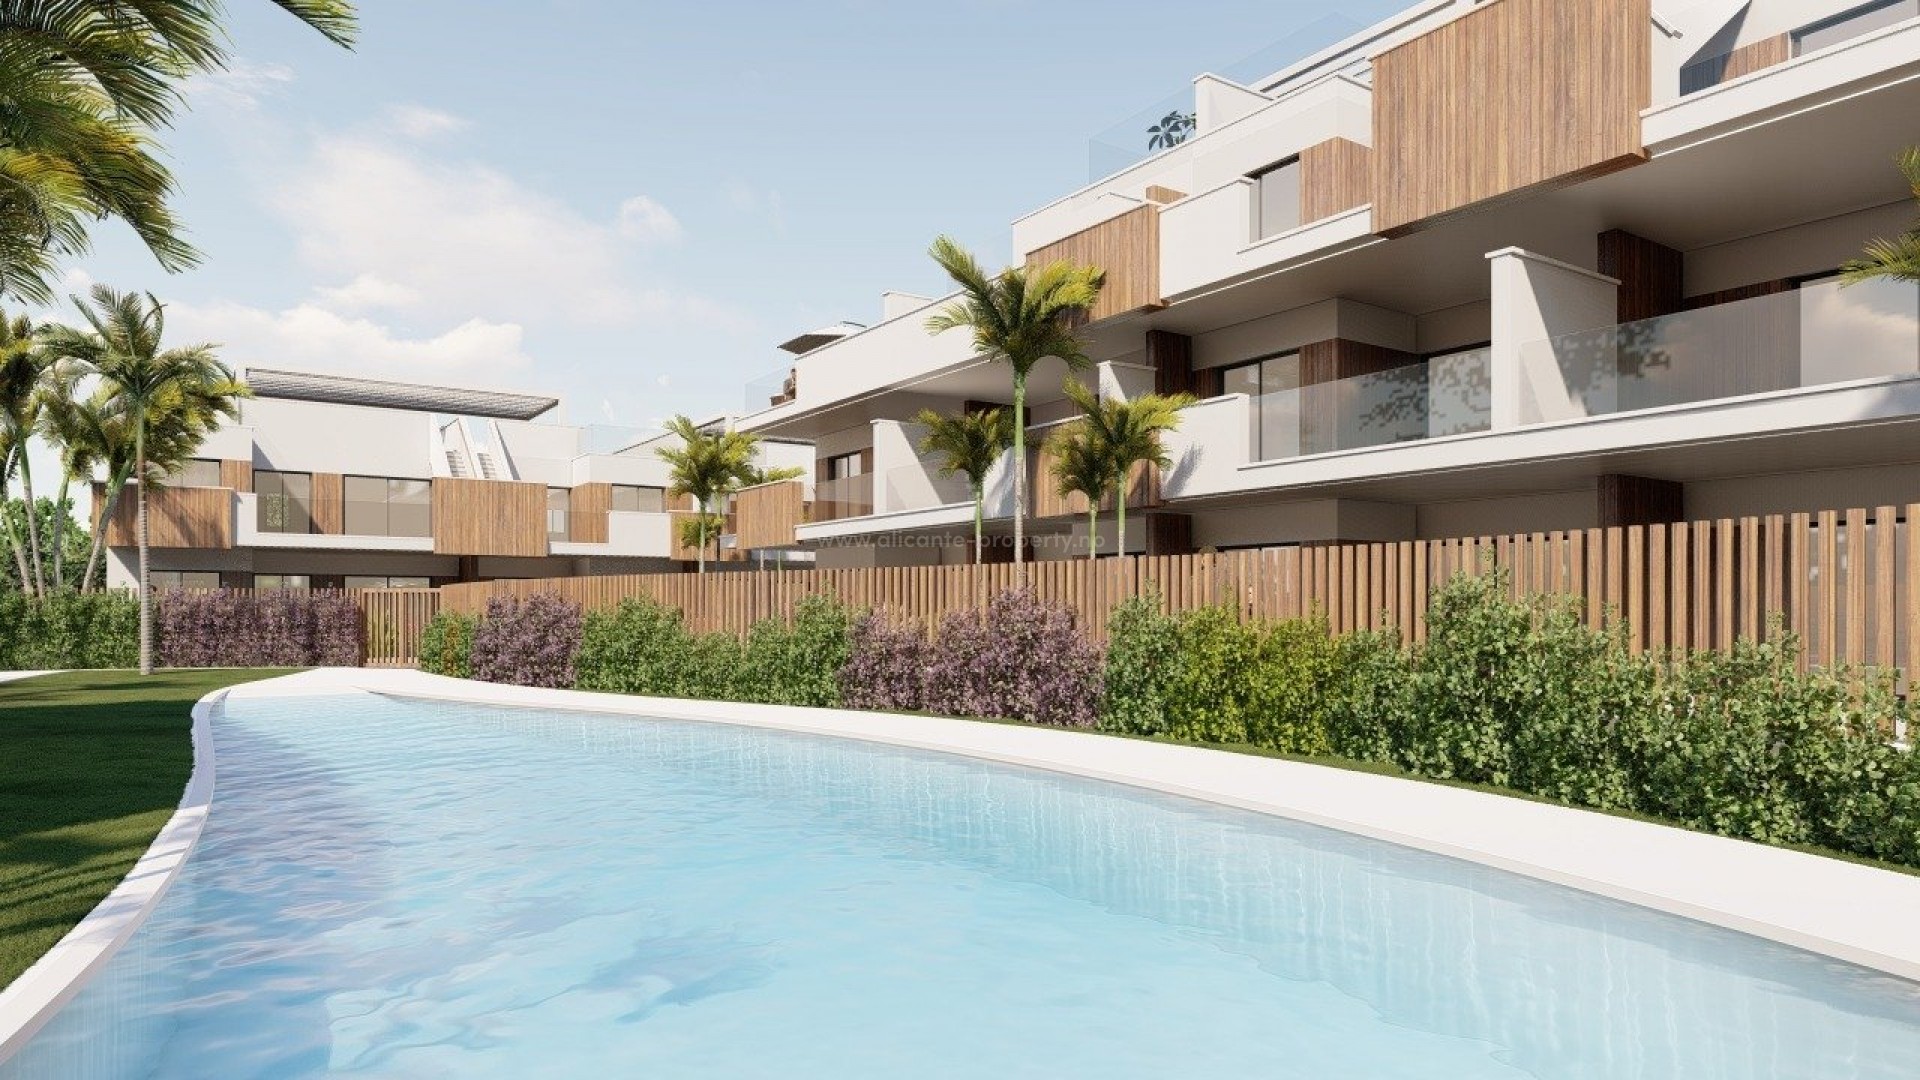 Moderne leiligheter og bungalow i Pilar de La Horadada, 2/3 soverom, 2 bad, stor felles hage med basseng, treningsstudio og lekeplass